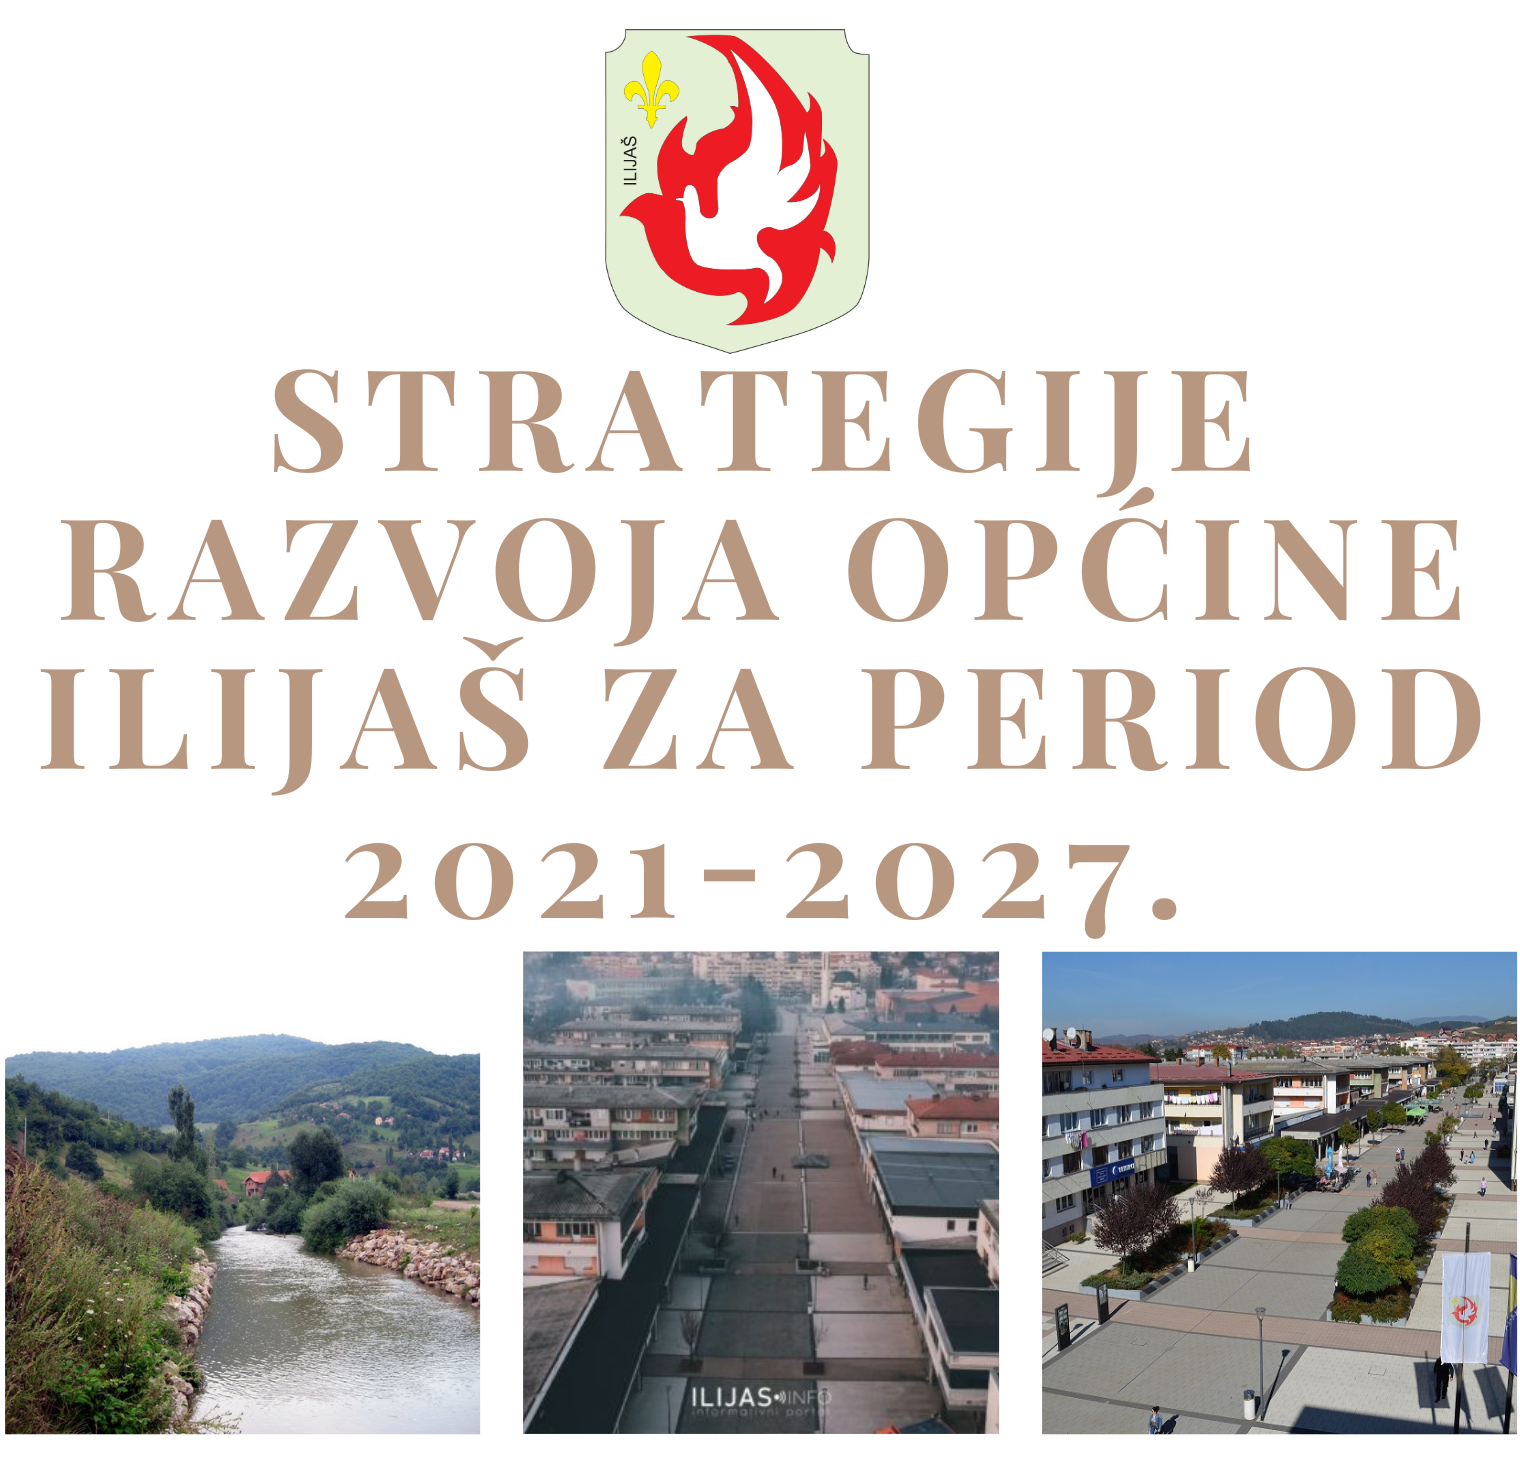 Strategije razvoja općine Ilijaš za period 2021-2027.